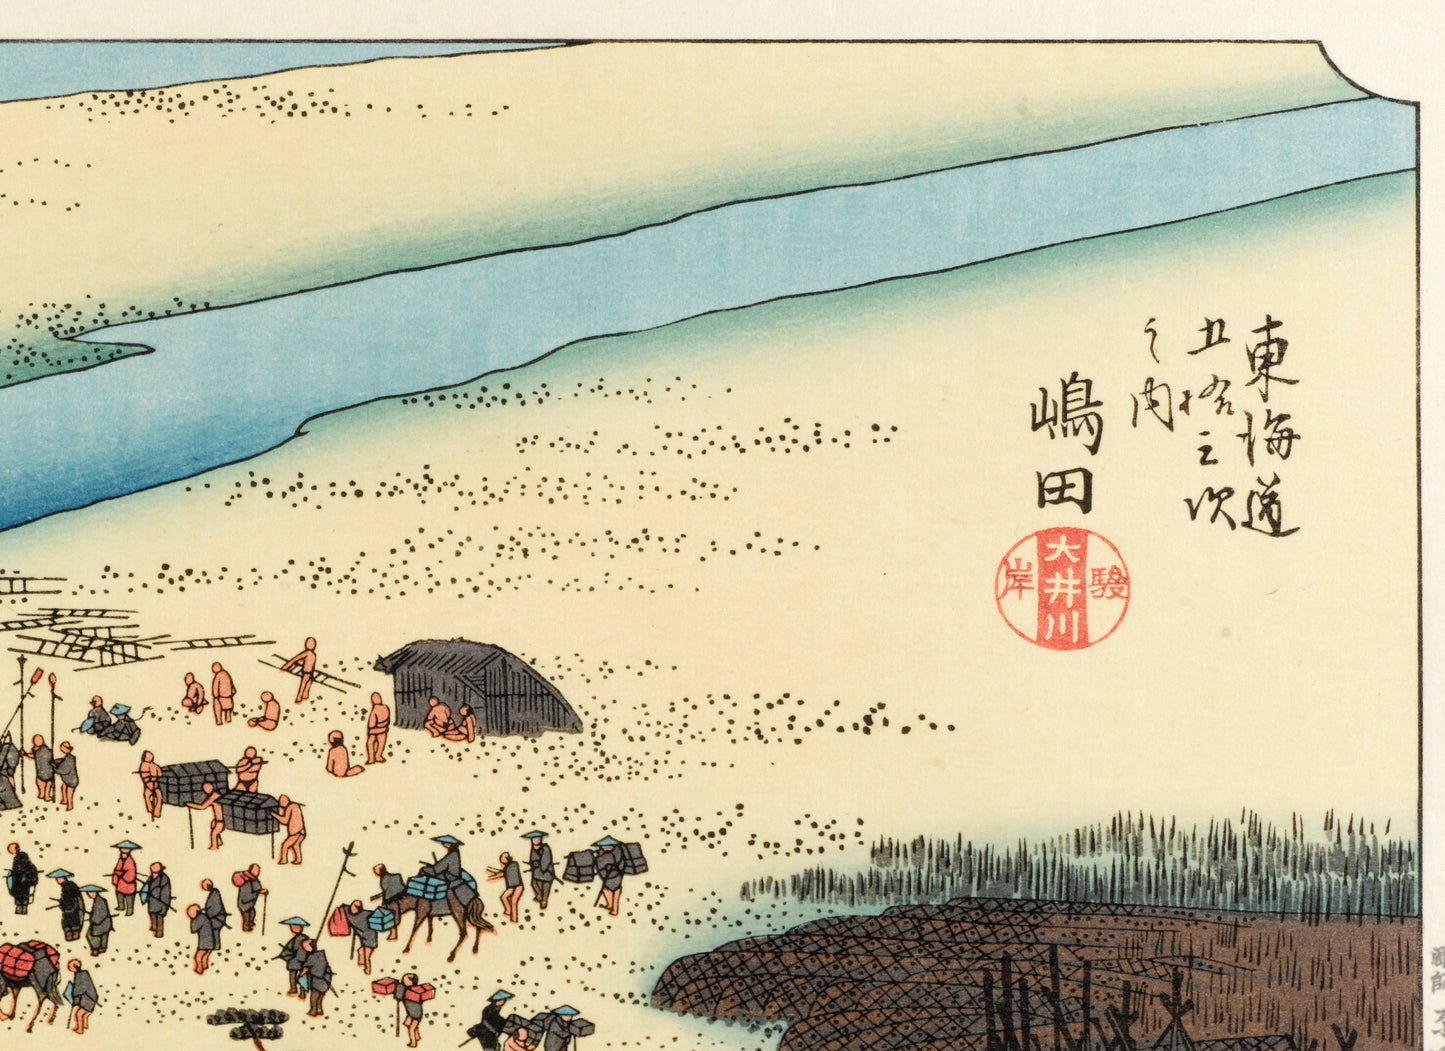 estampe japonaise de Hiroshige, sceau et calligraphies japonaises